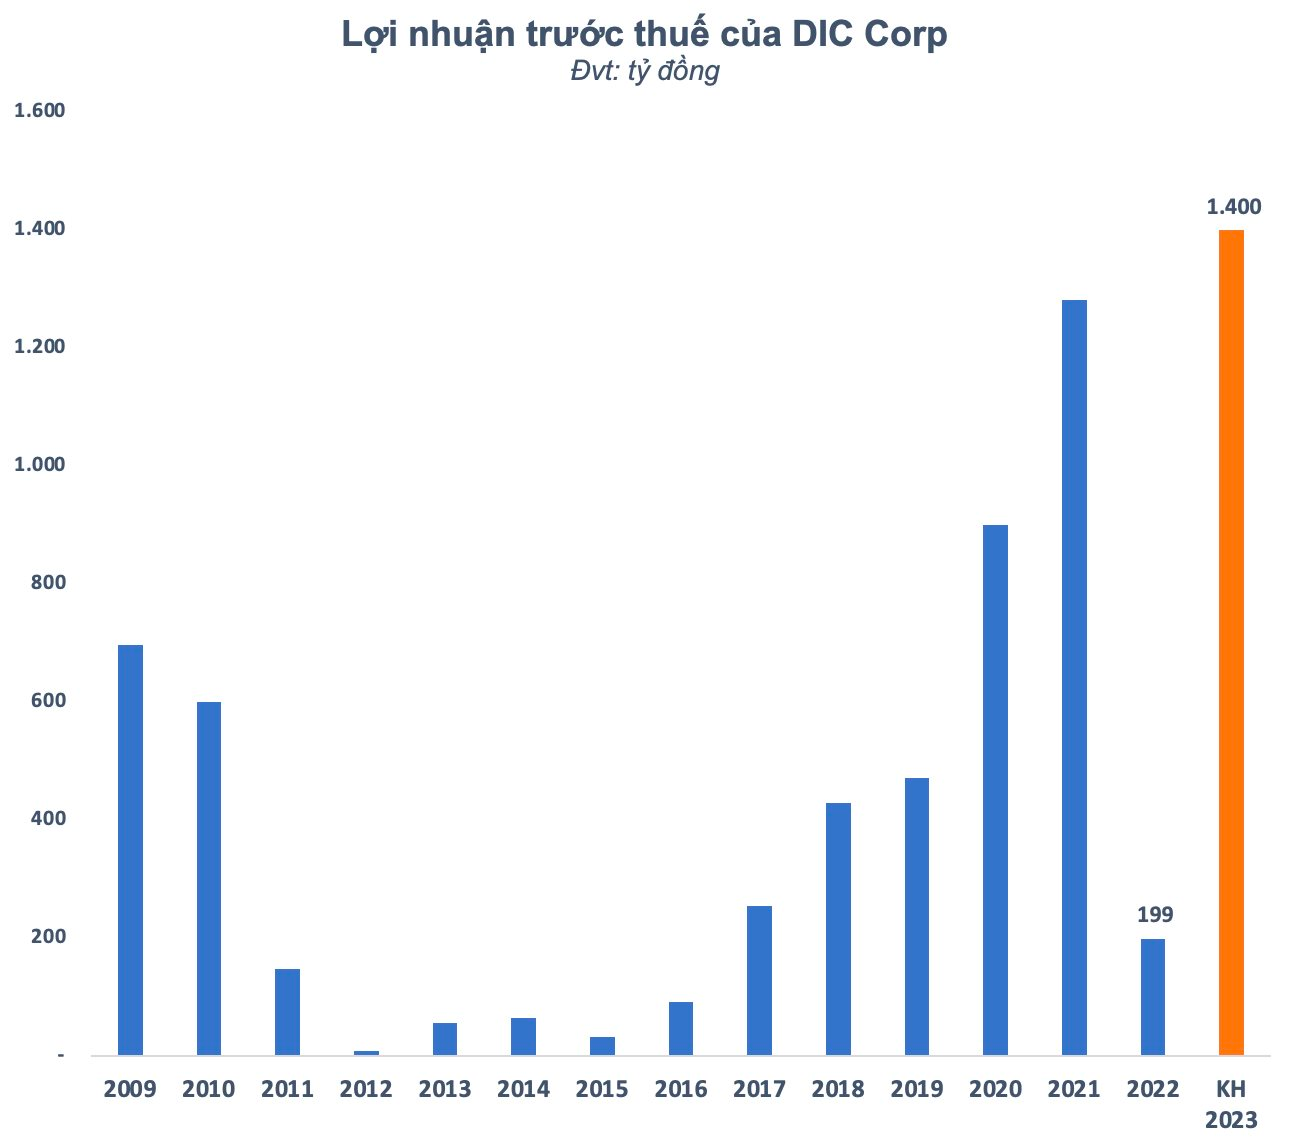 "Vỡ" kế hoạch 2022, DIC Corp (DIG) bất ngờ đặt mục tiêu lãi kỷ lục 1.400 tỷ đồng năm 2023 - Ảnh 1.